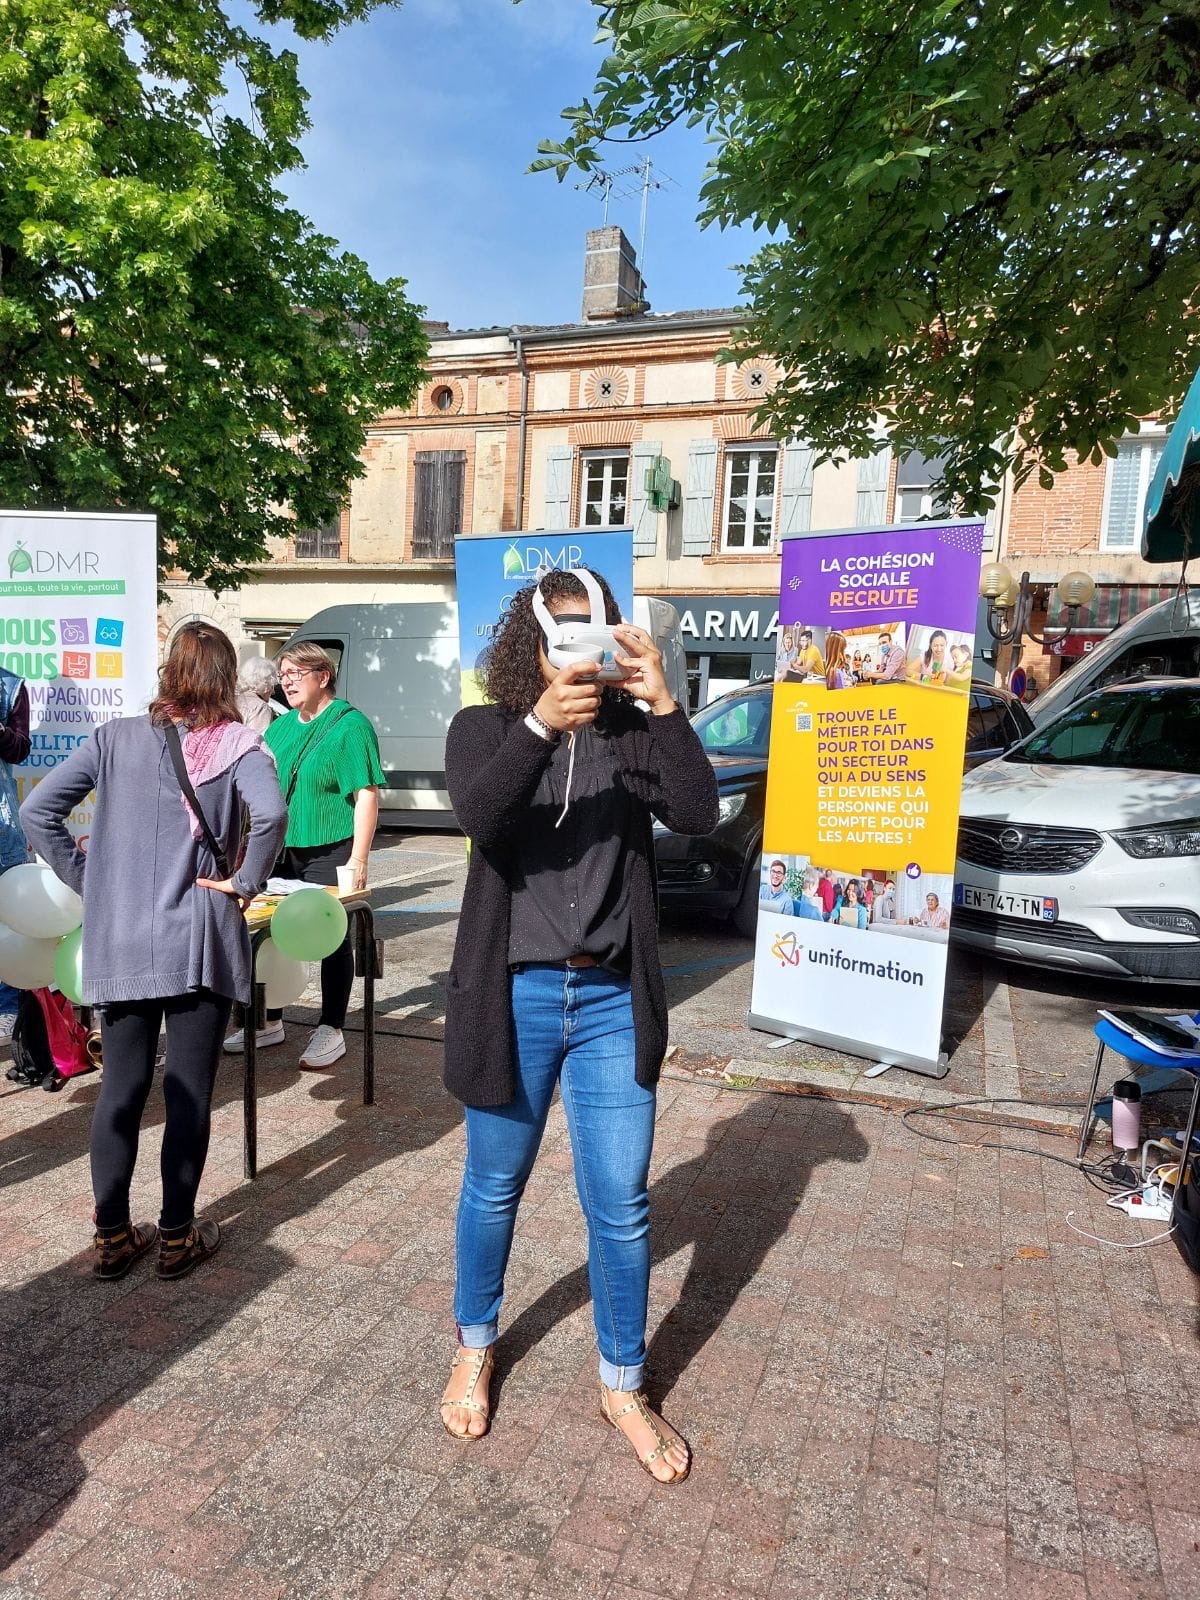 L’ADMR de Molières sur le marché de Lafrançaise avec le casque de réalité virtuelle